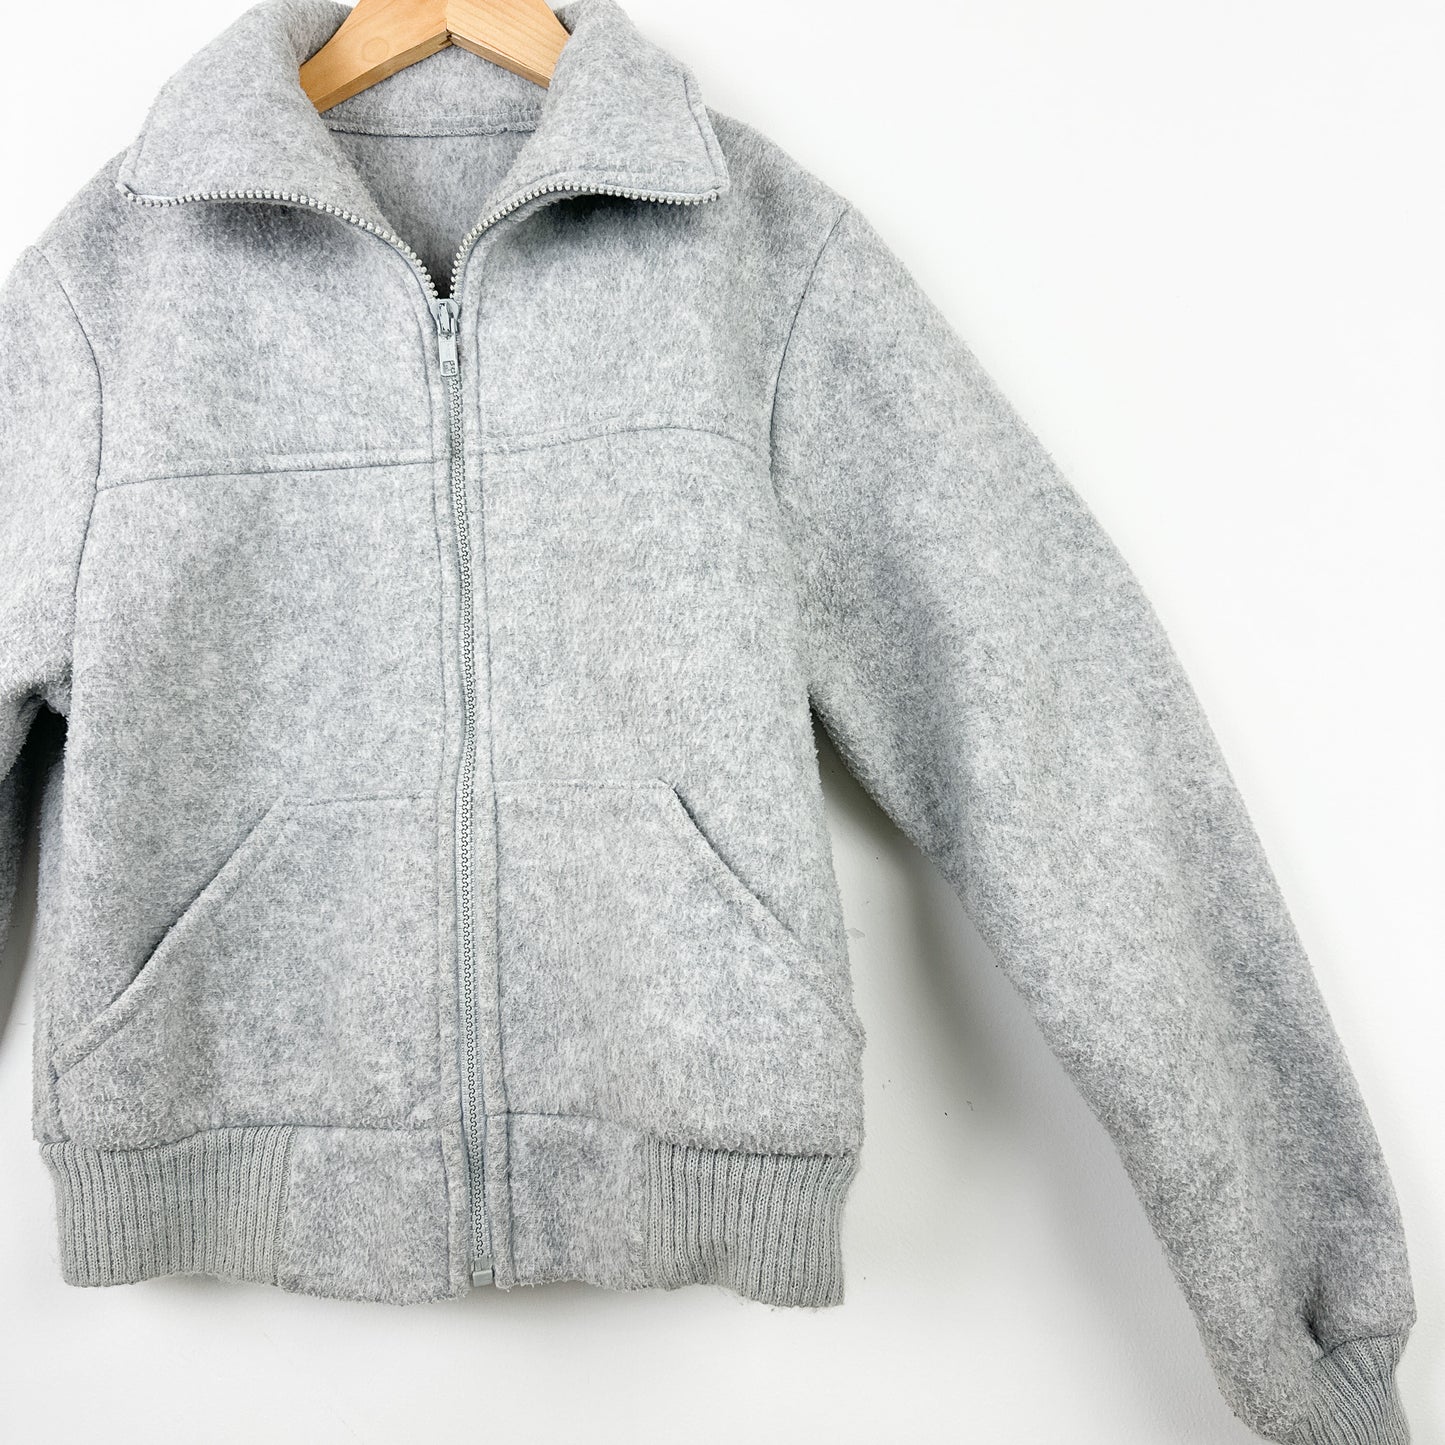 80's Vintage REI Zip Up Fleece Jacket - Size 10-12yr